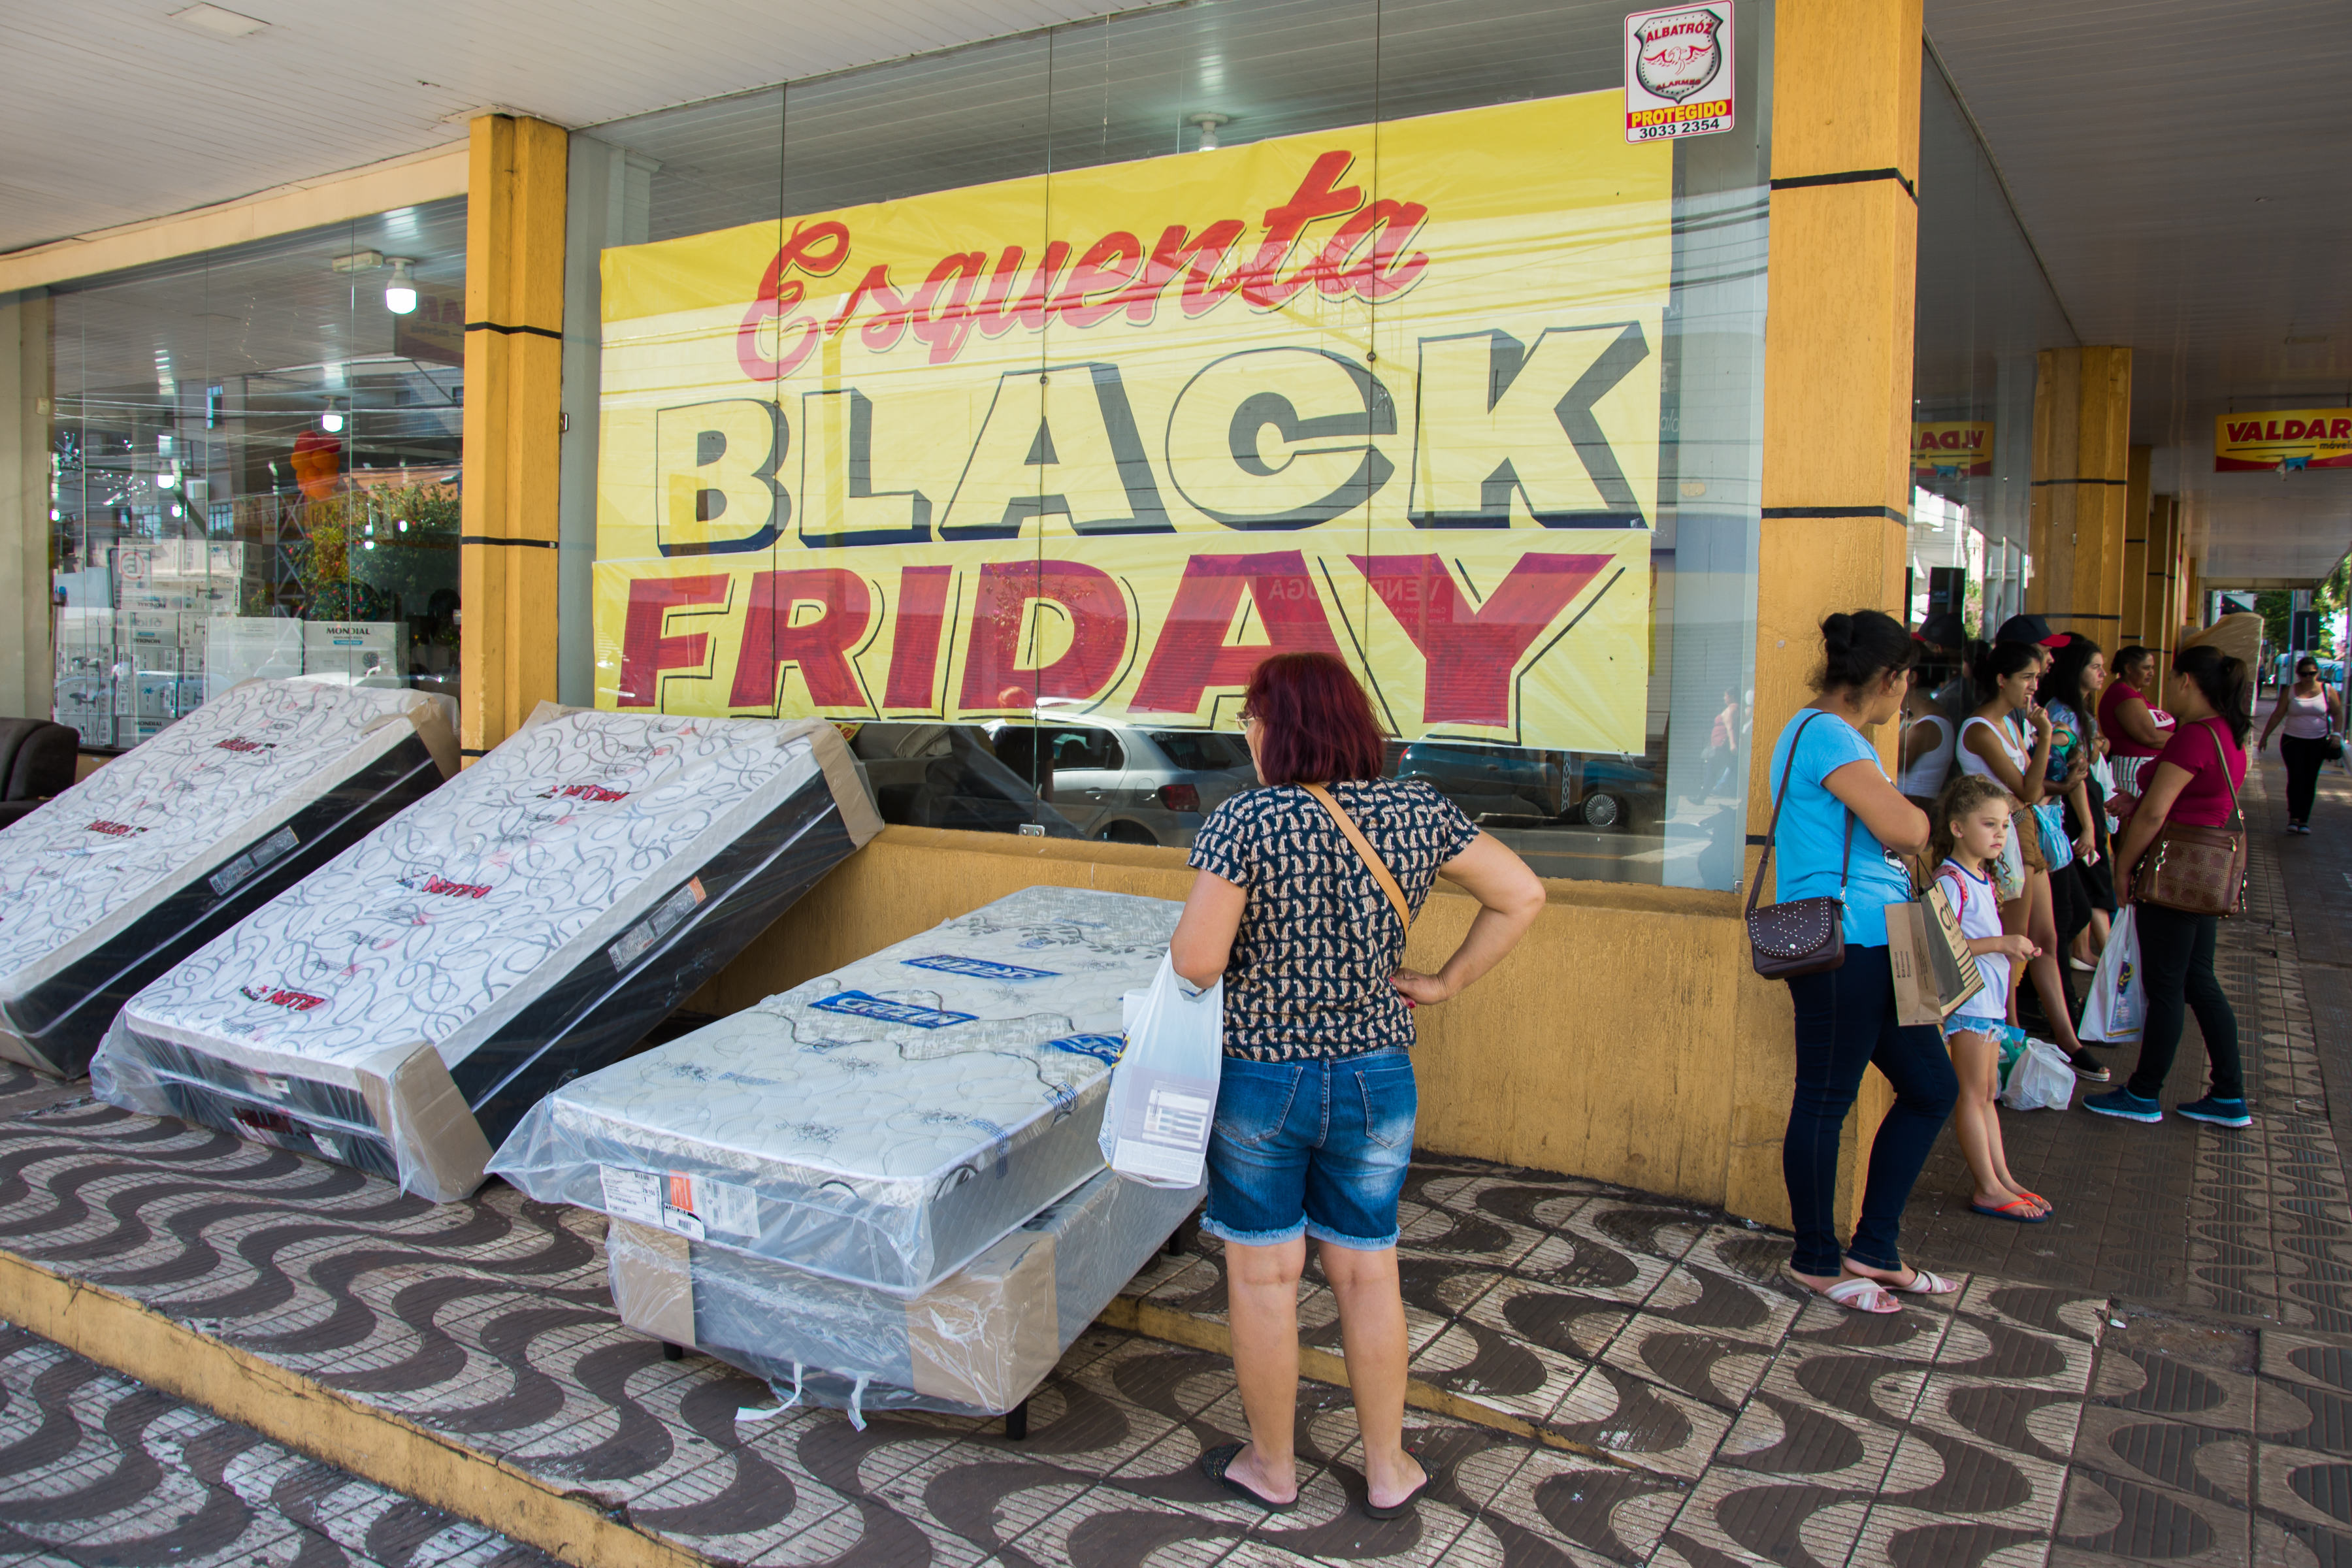 Em Apucarana, a Black Friday acontece no dia 29 de novembro, quando o comércio fica aberto até as 22 horas (Maicon Sales)